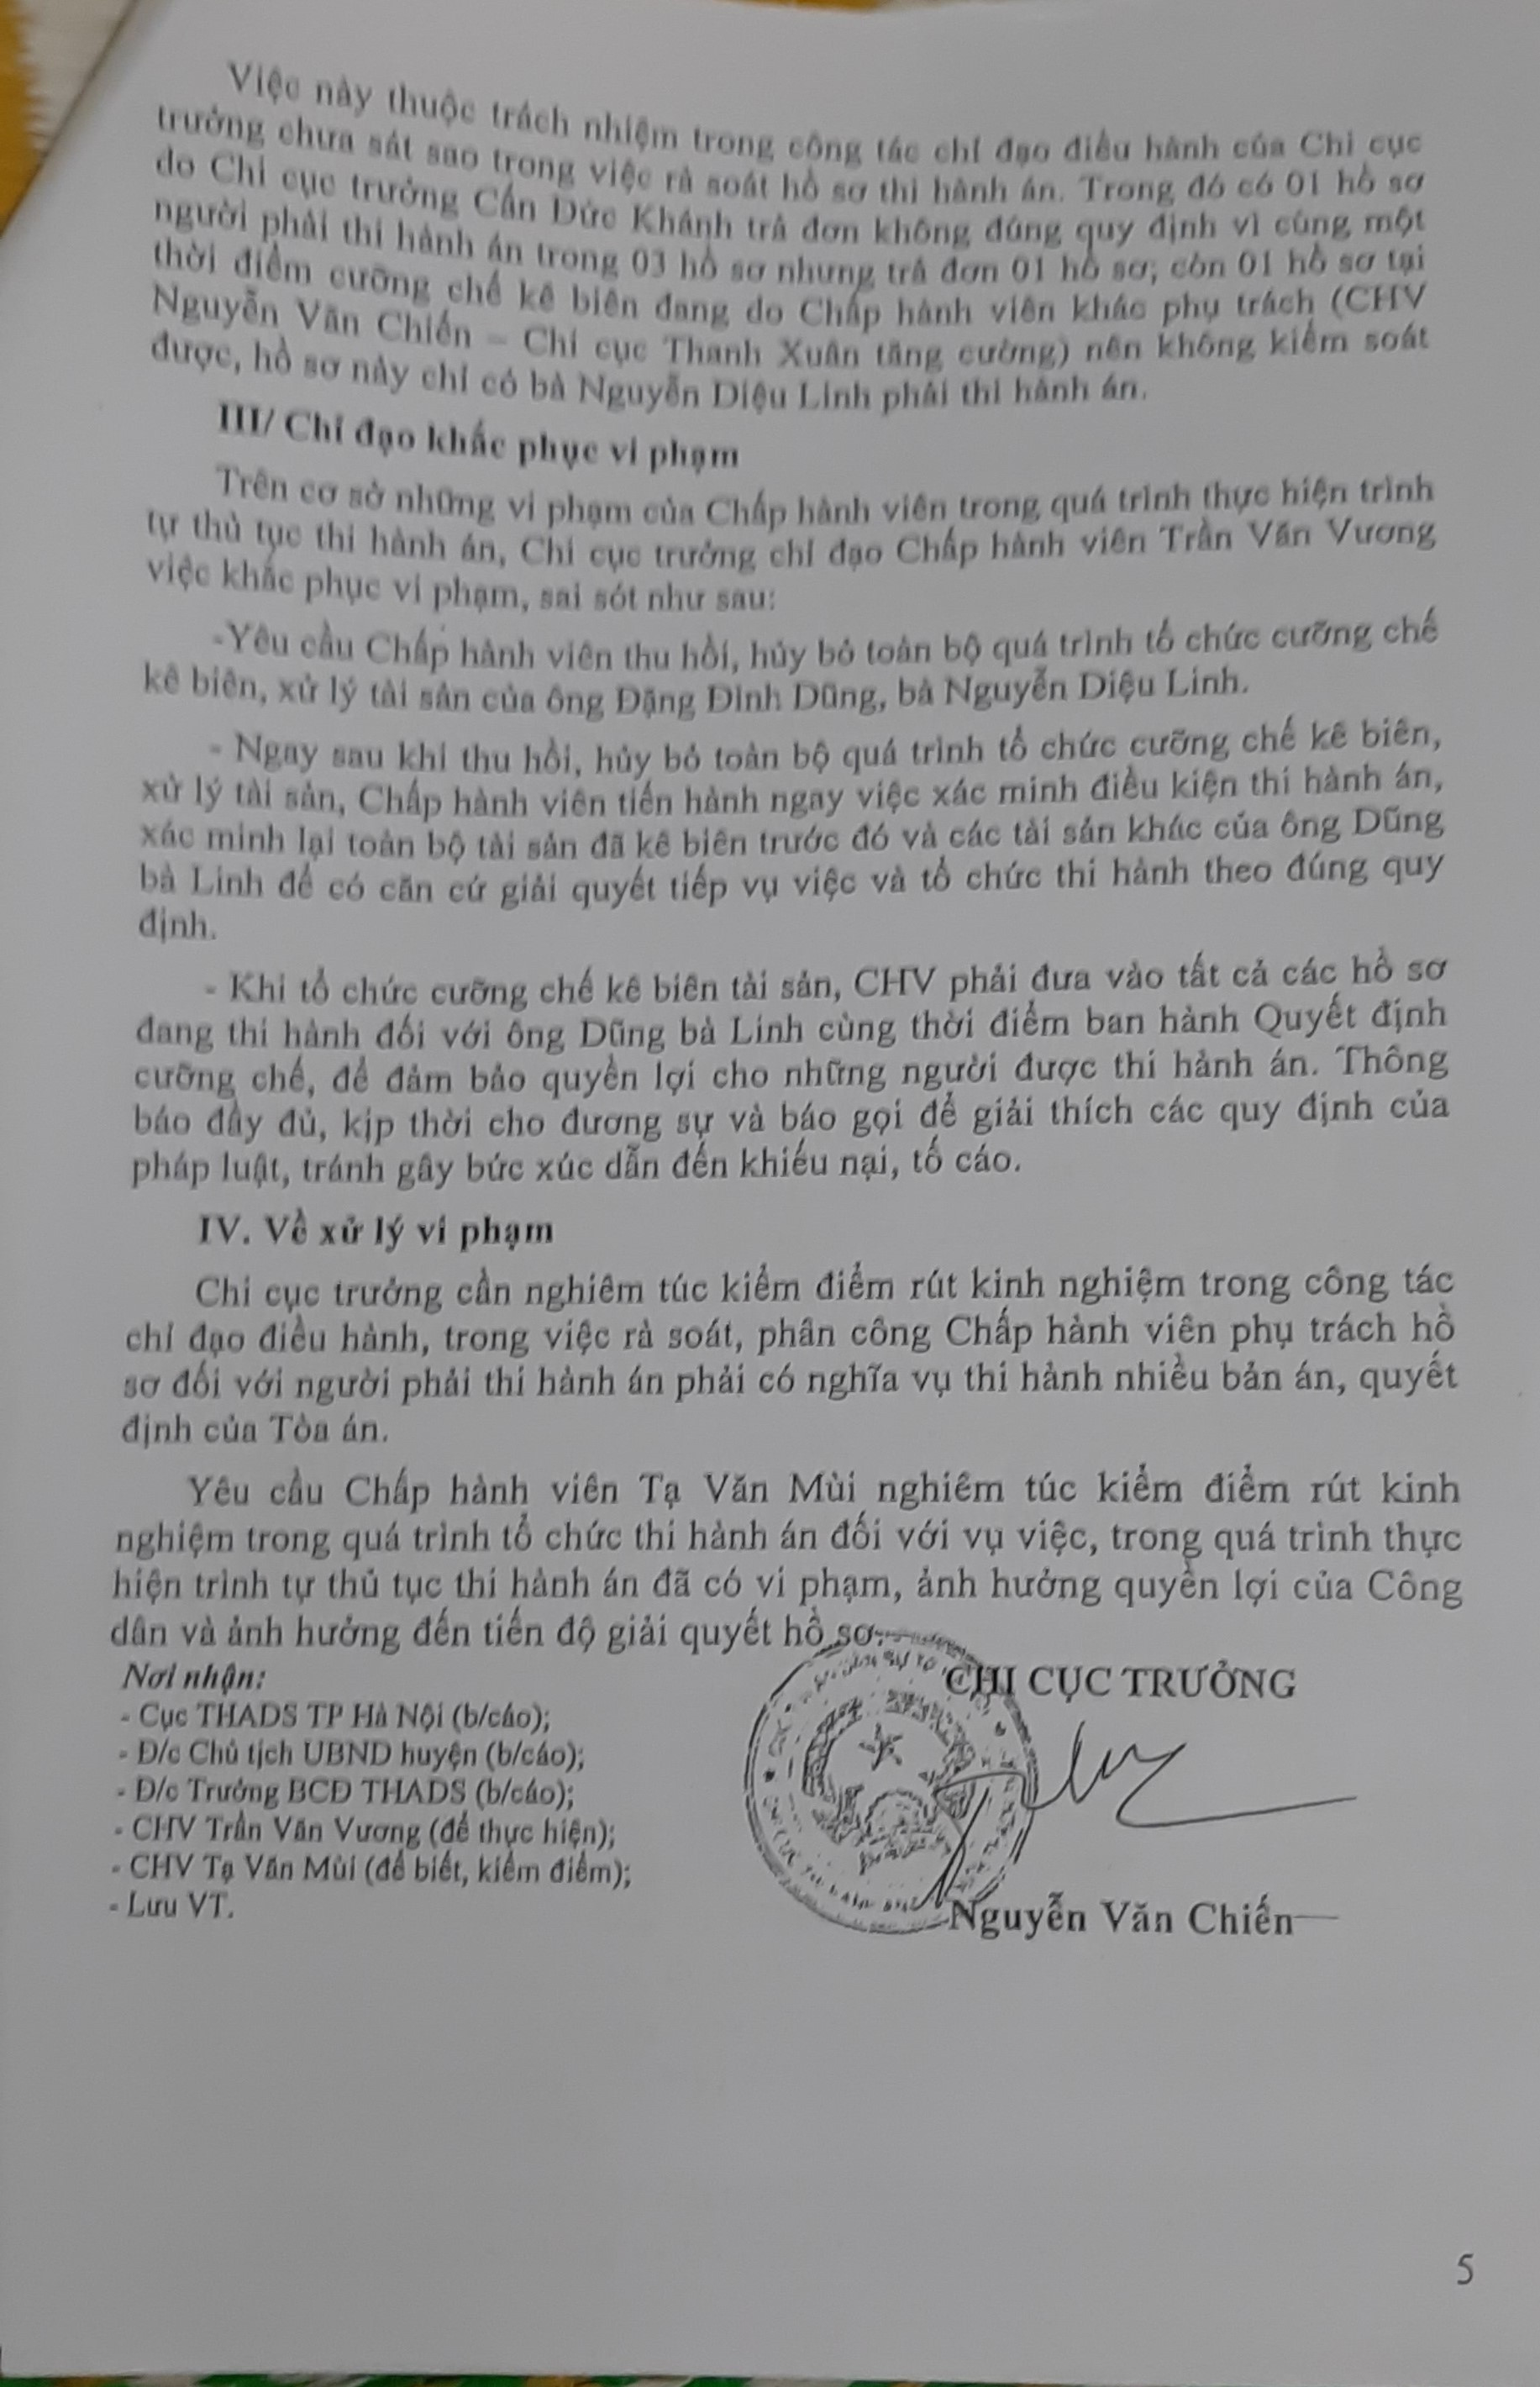 Thạch Thất, Hà Nội: Chấp hành viên vi phạm về trình tự tố tụng khi thi hành án